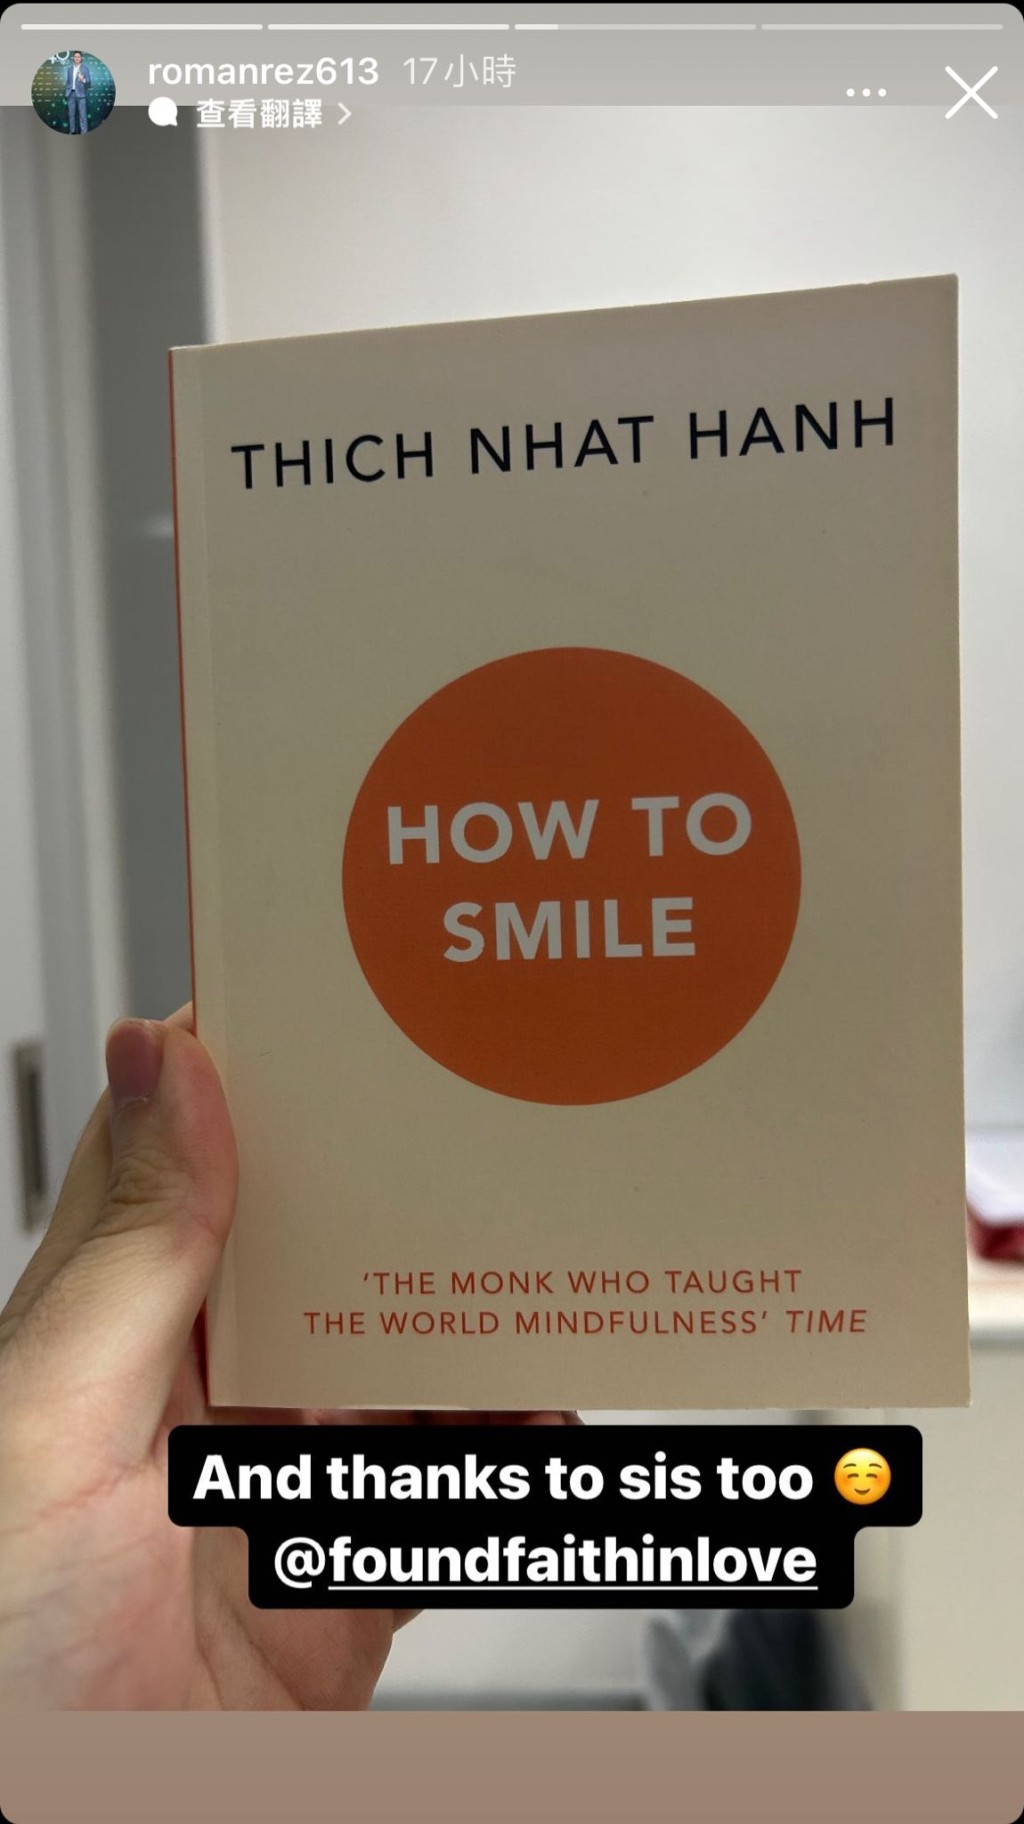 当中可见赵式芝推荐的是一行禅师（Thich Nhat Hanh）的作品《How to Smile》，对同父异母的细佬赵式正尽显关怀。